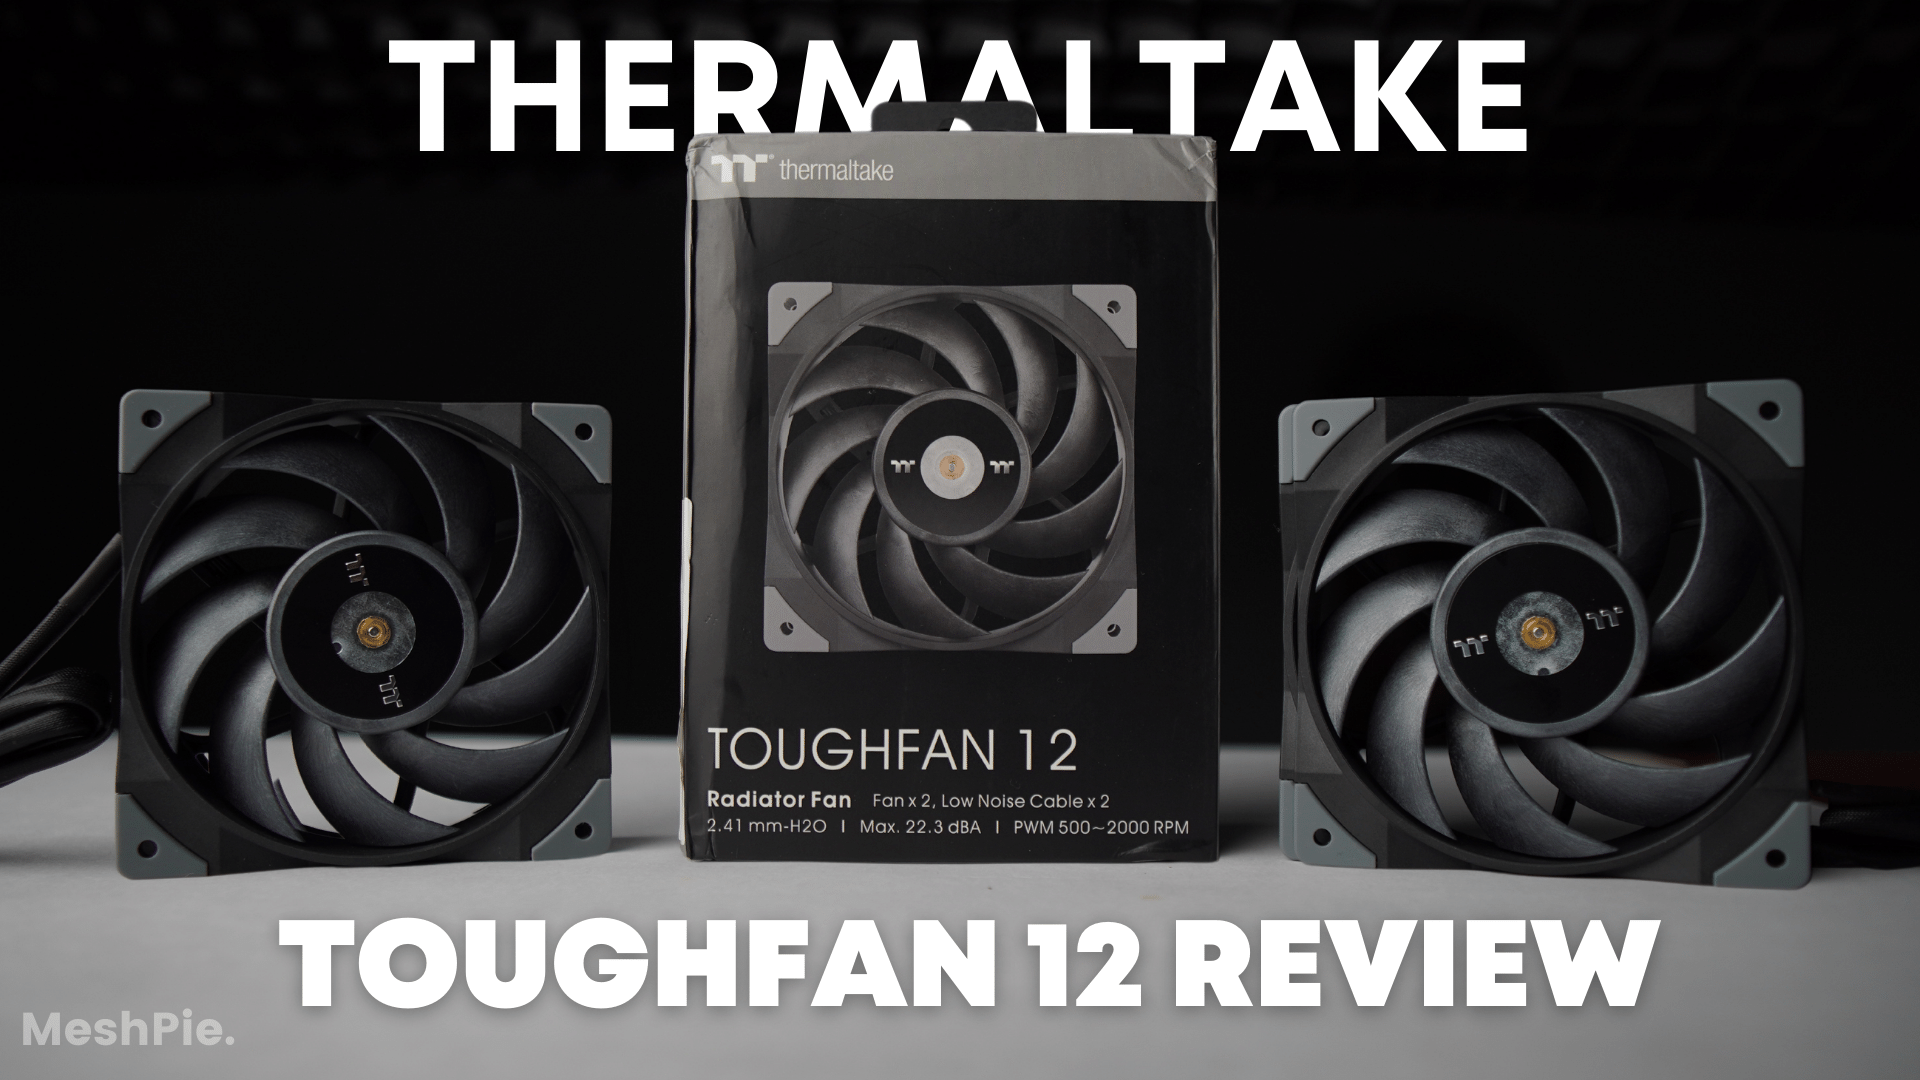 Thermaltake Toughfan 12 review